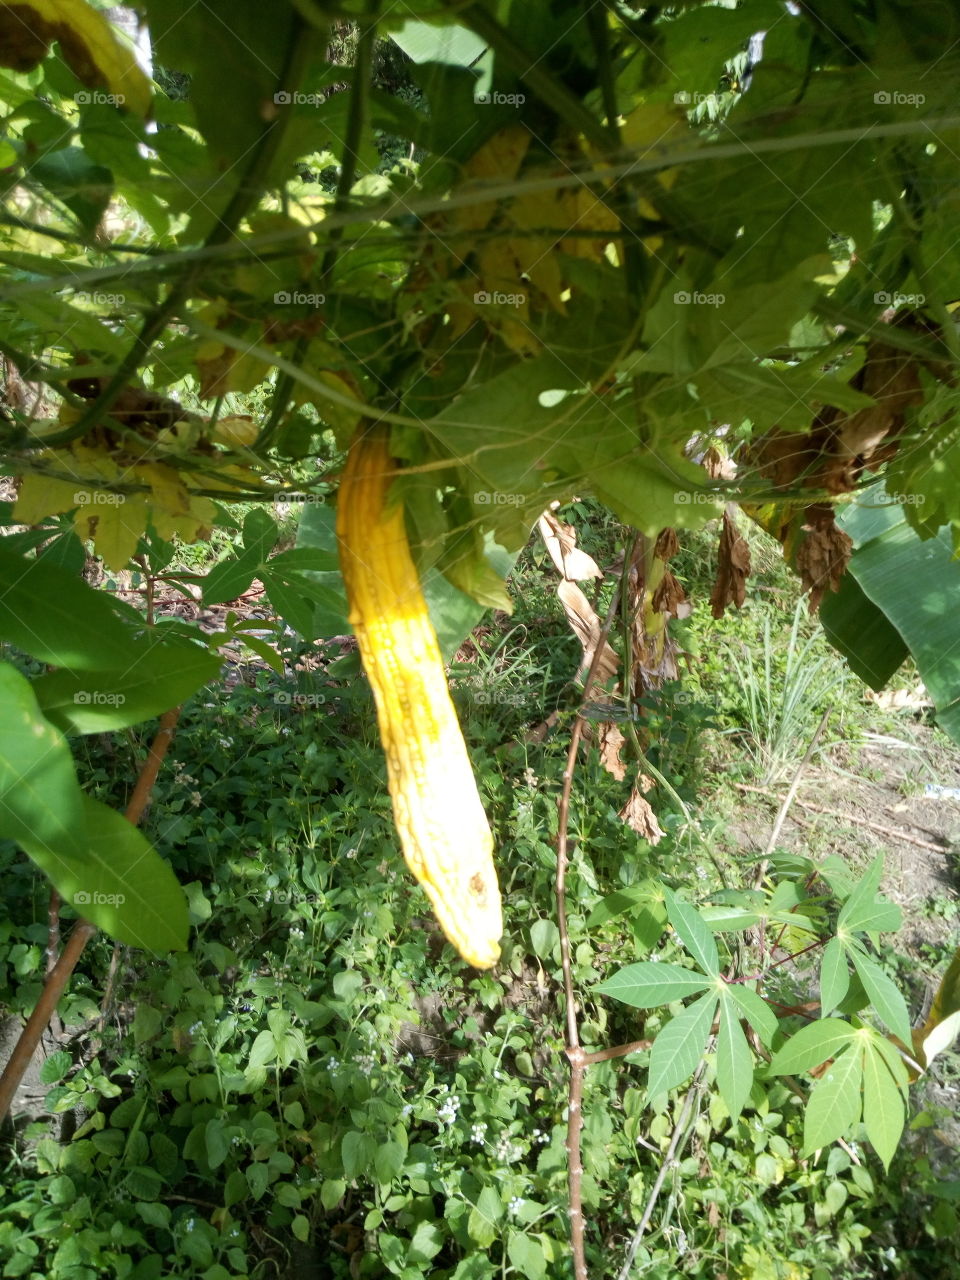 the yellow ampalaya plantation